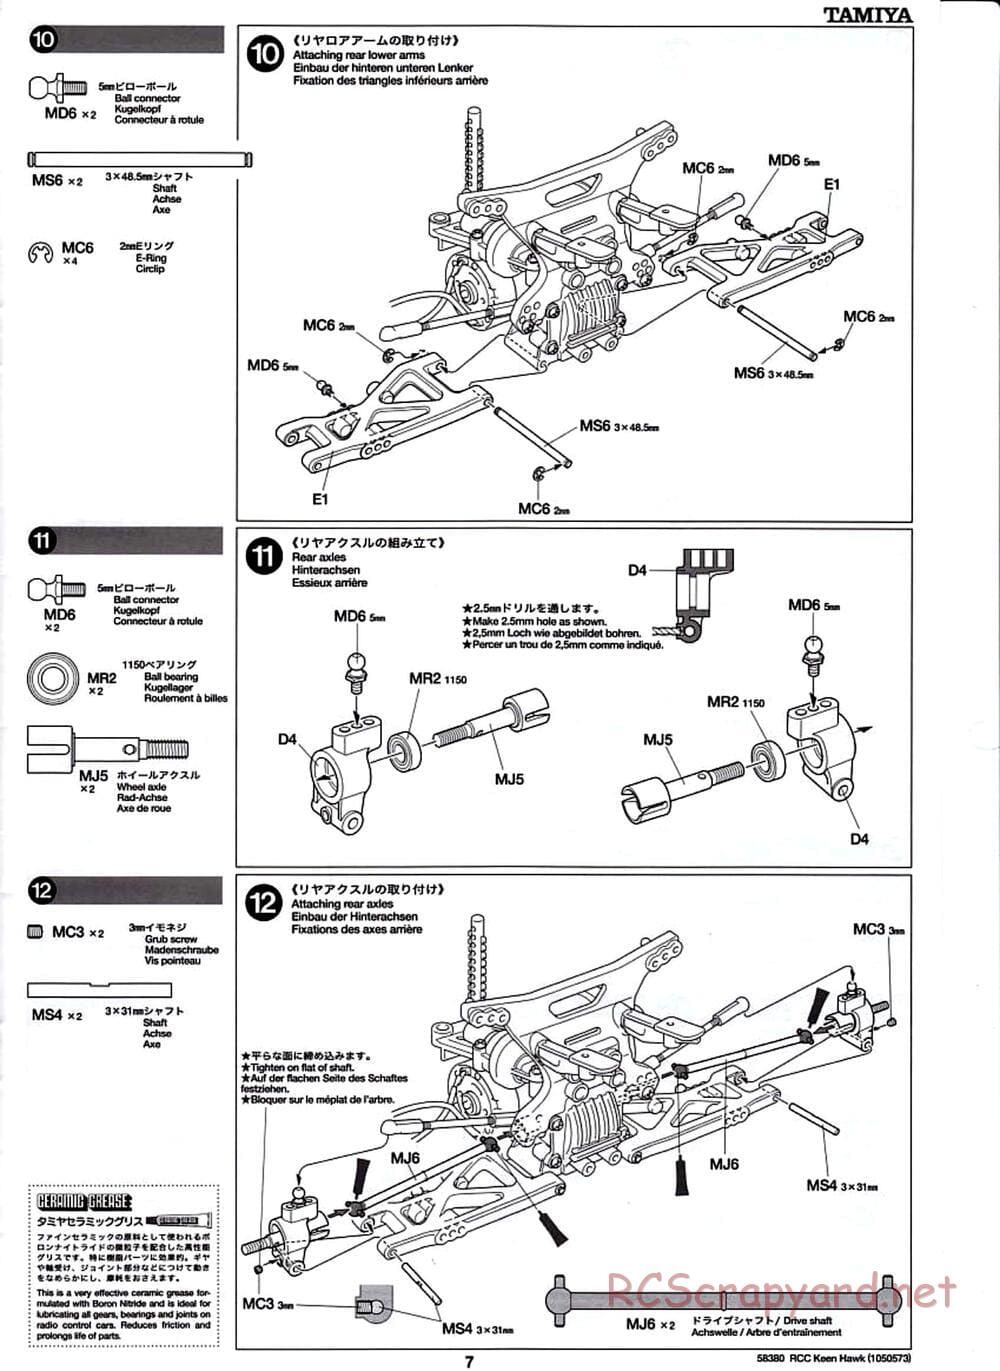 Tamiya - Keen Hawk Chassis - Manual - Page 7